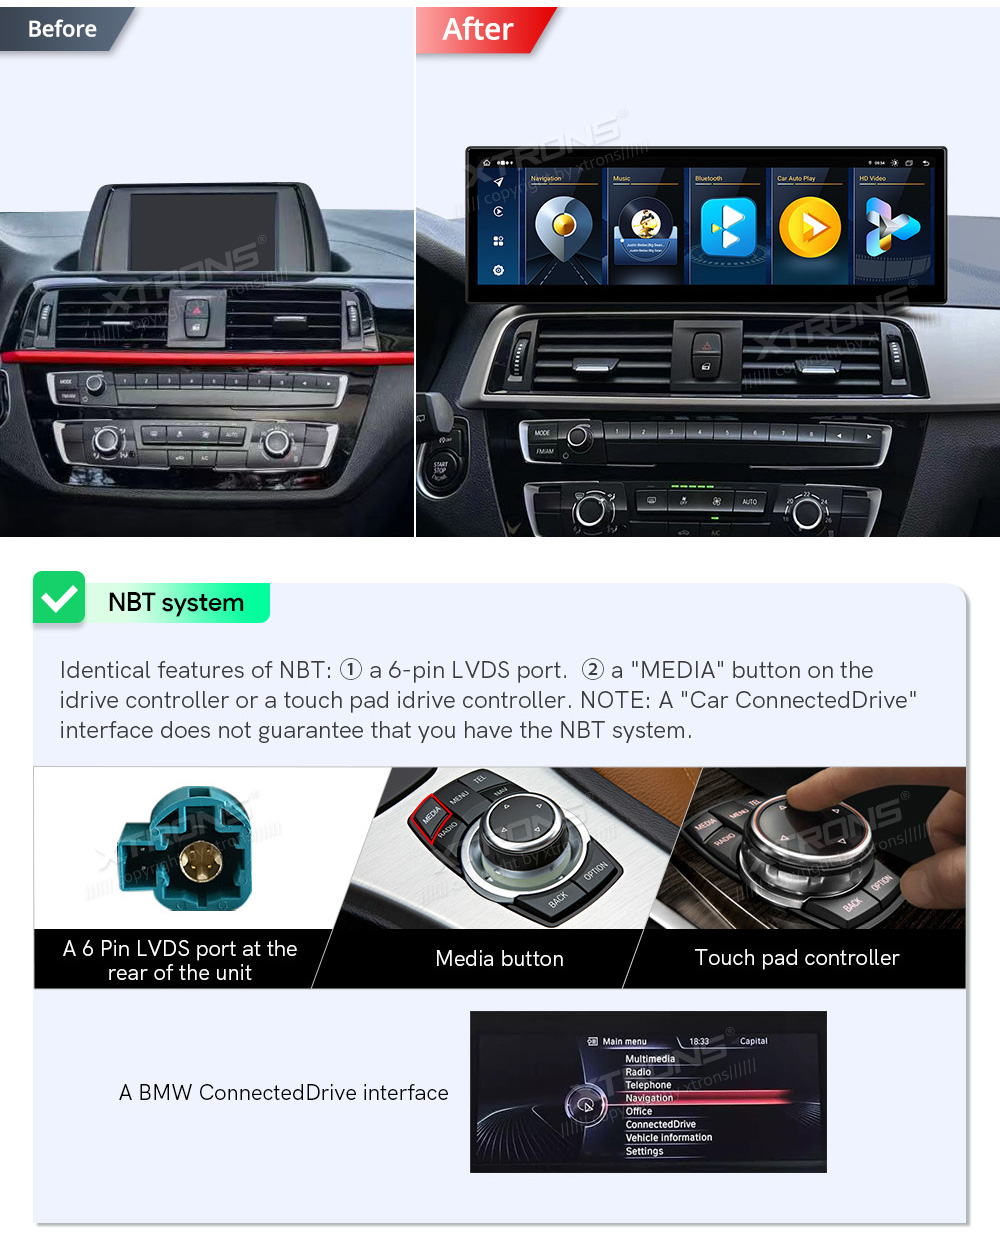 BMW 1.ser | BMW 2.ser | F20 | F23 | (2011-2016)  совместимость мультимедийного радио в зависимости от модели автомобиля